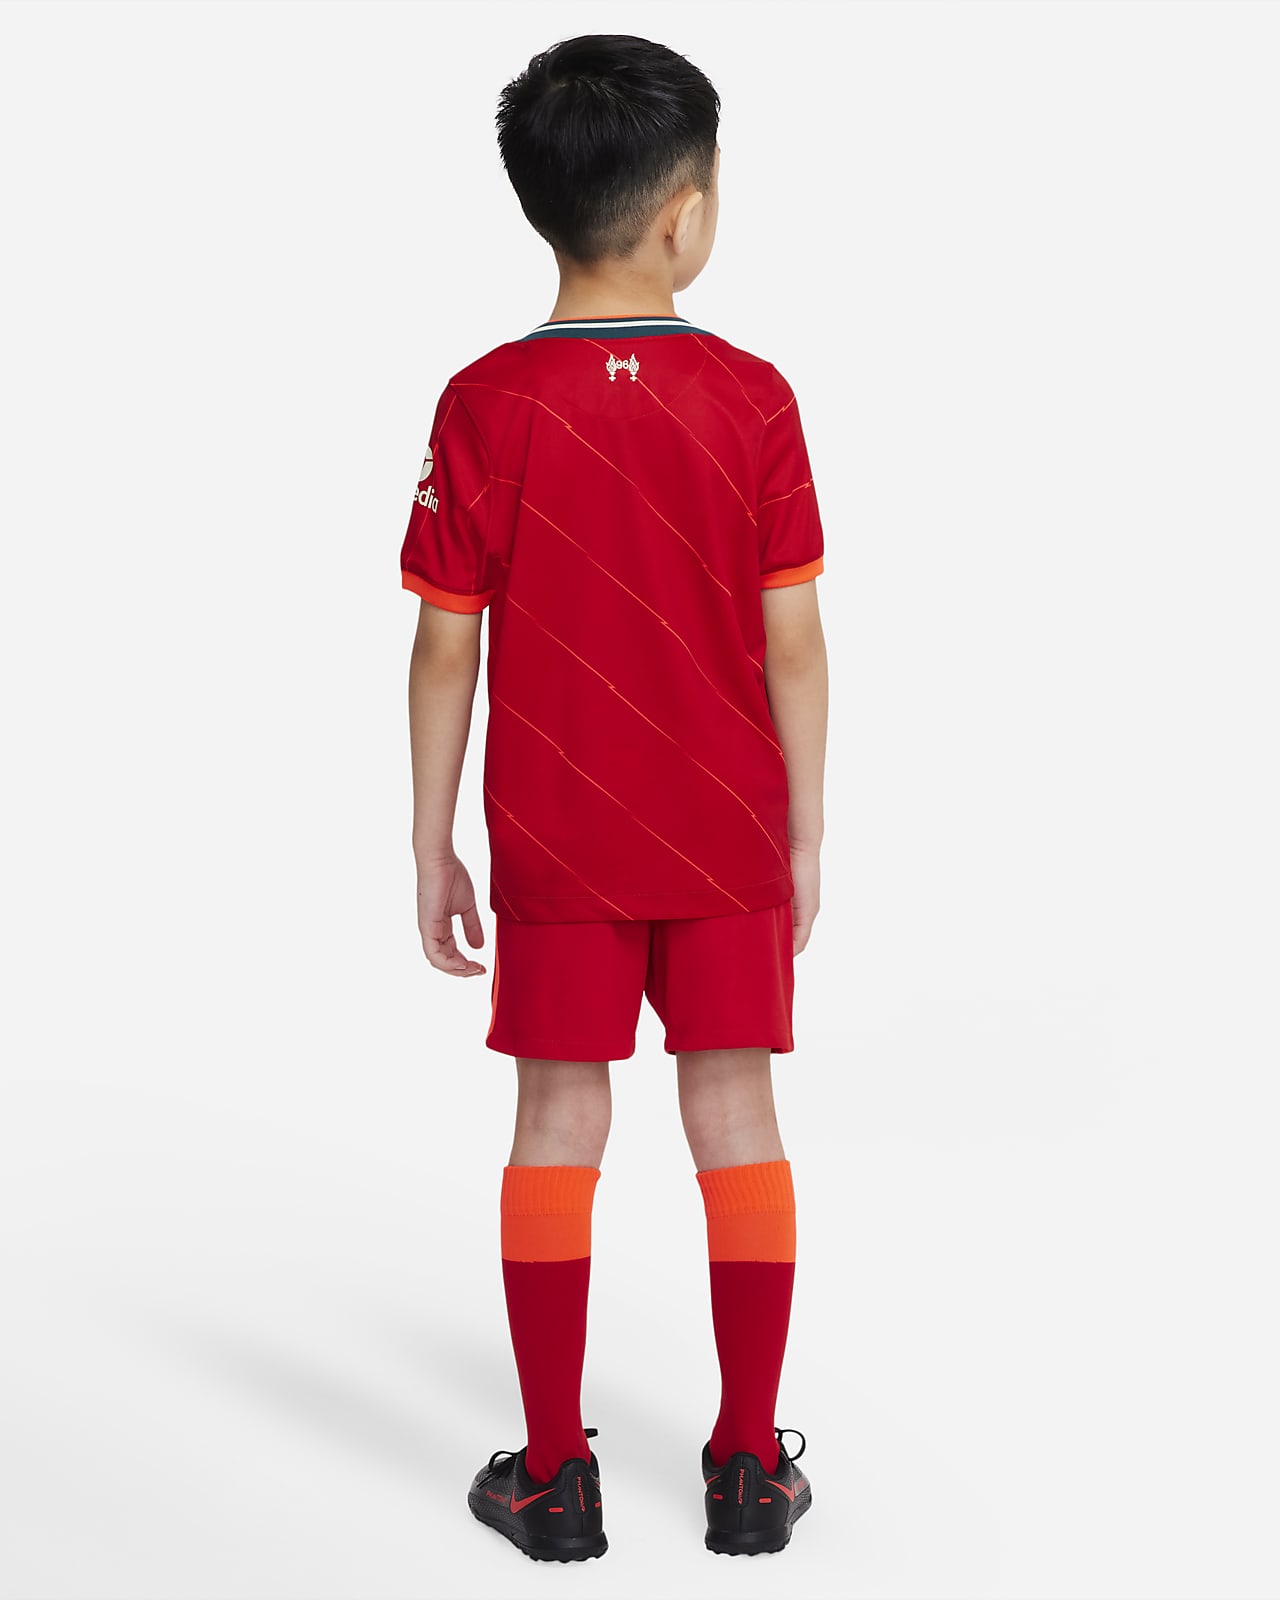 kaustisk Tag fat Patriotisk Liverpool FC 2021/22 Home-sæt til mindre børn. Nike DK